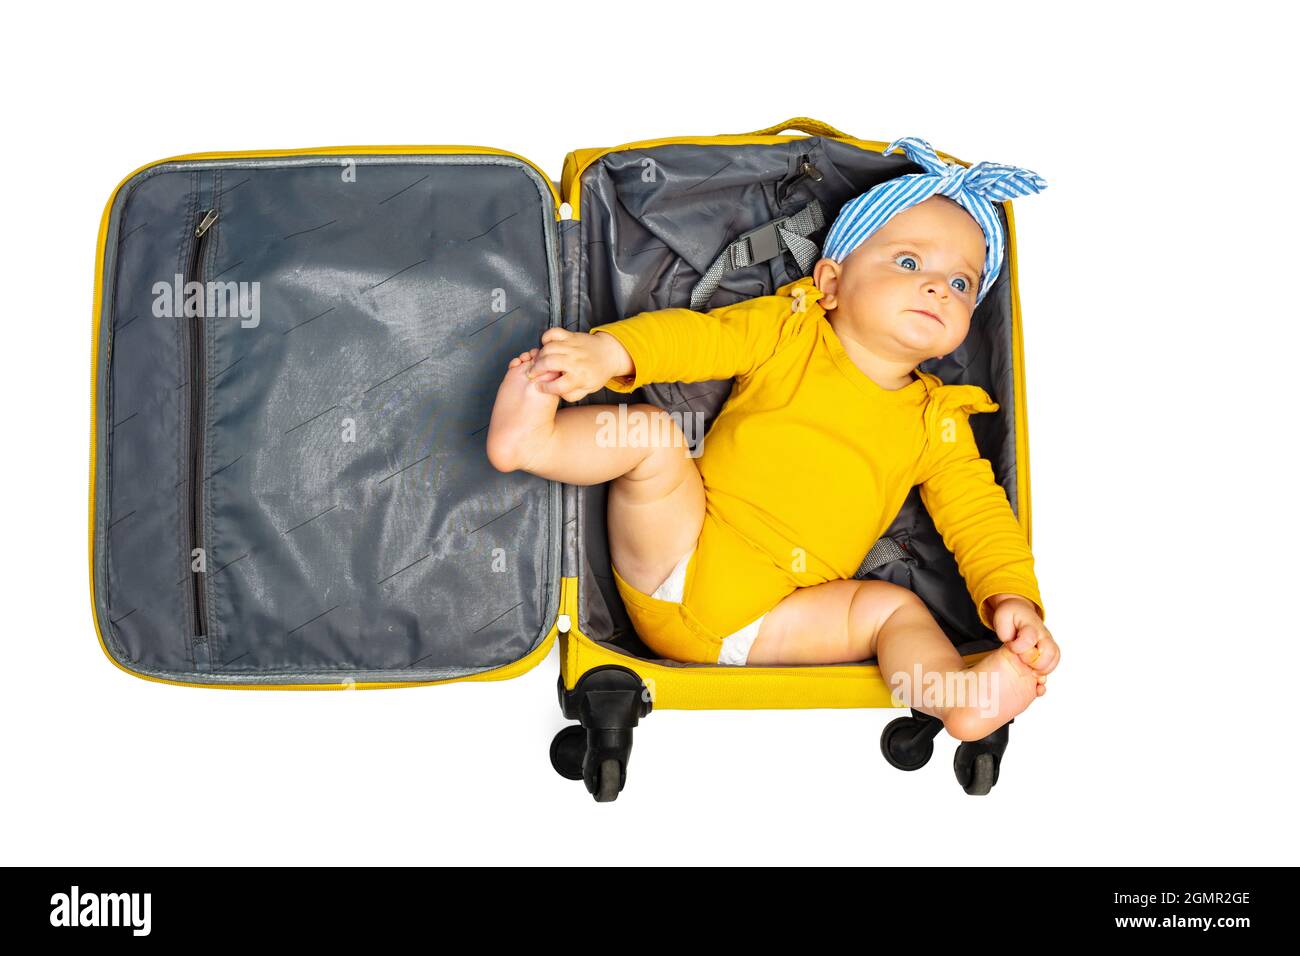 Bébé fille couché dans un sac à bagages à main vide Photo Stock - Alamy